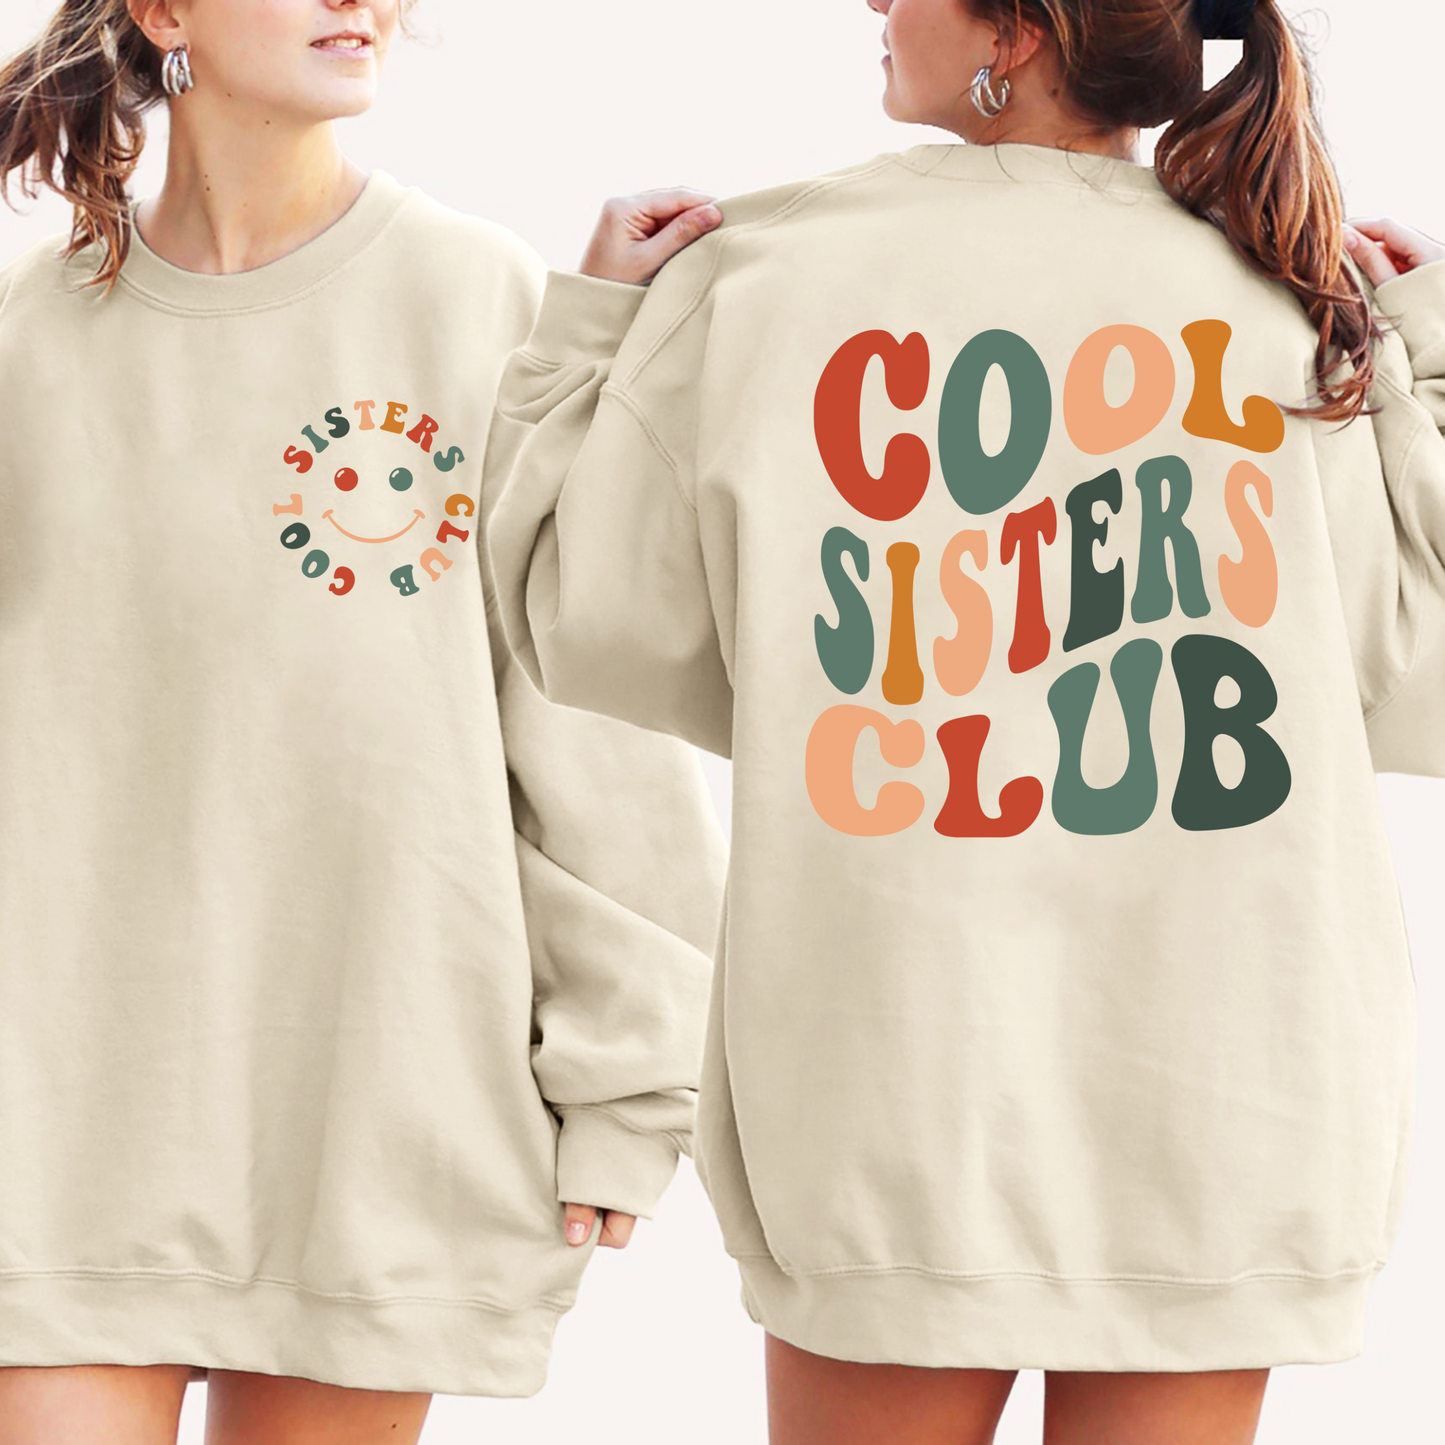 Geschwistergeist - 'Cool Sisters Club' Gemütliche Kollektion